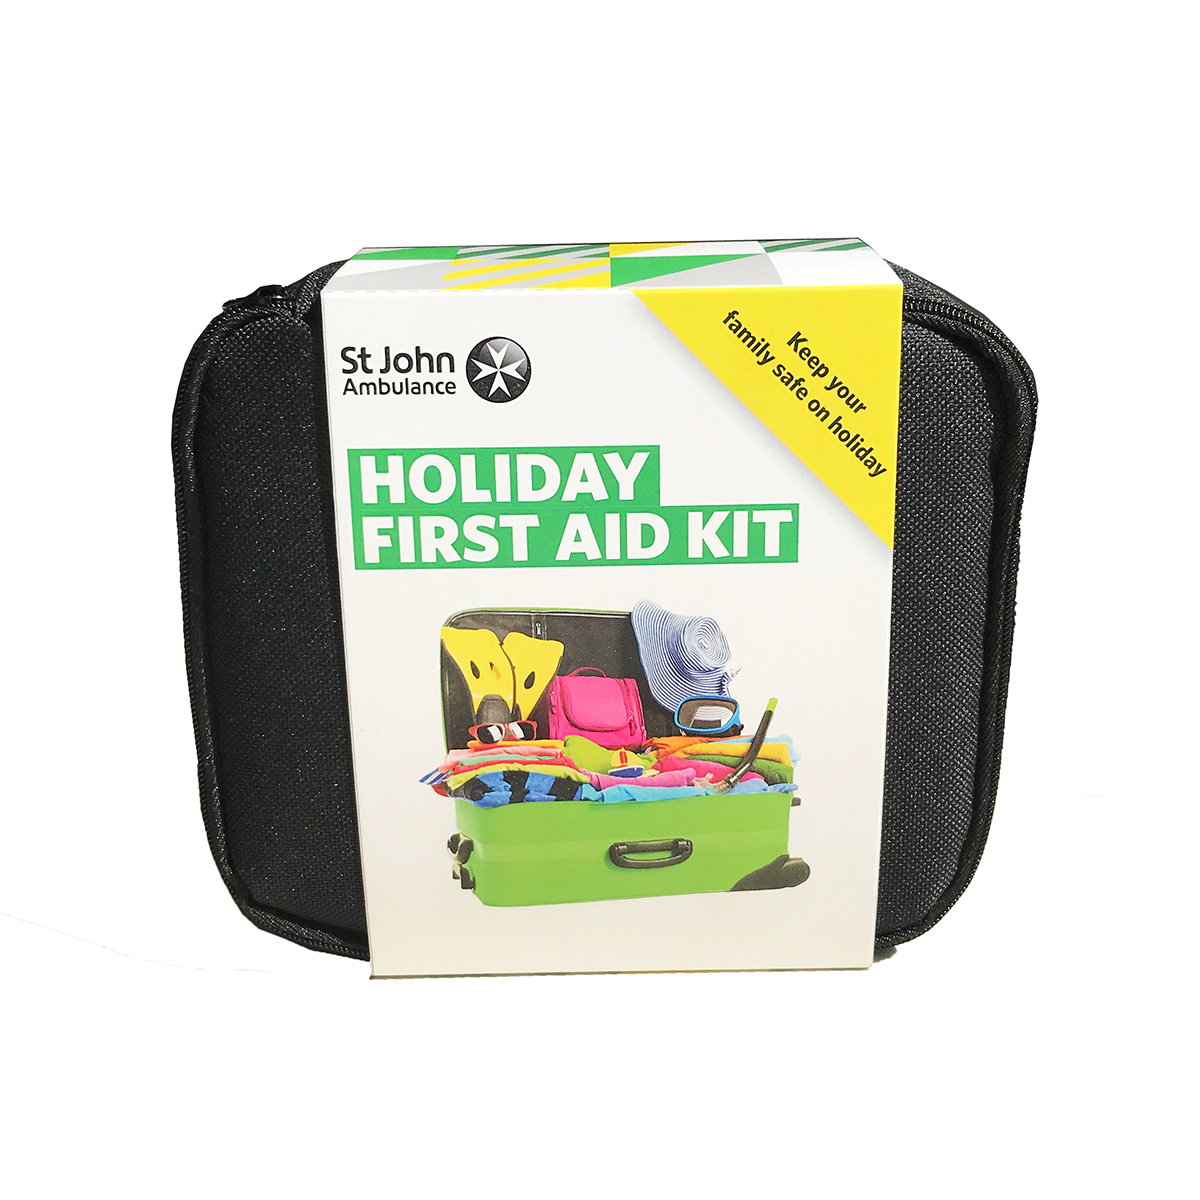 St John Ambulance Holiday First Aid Kit